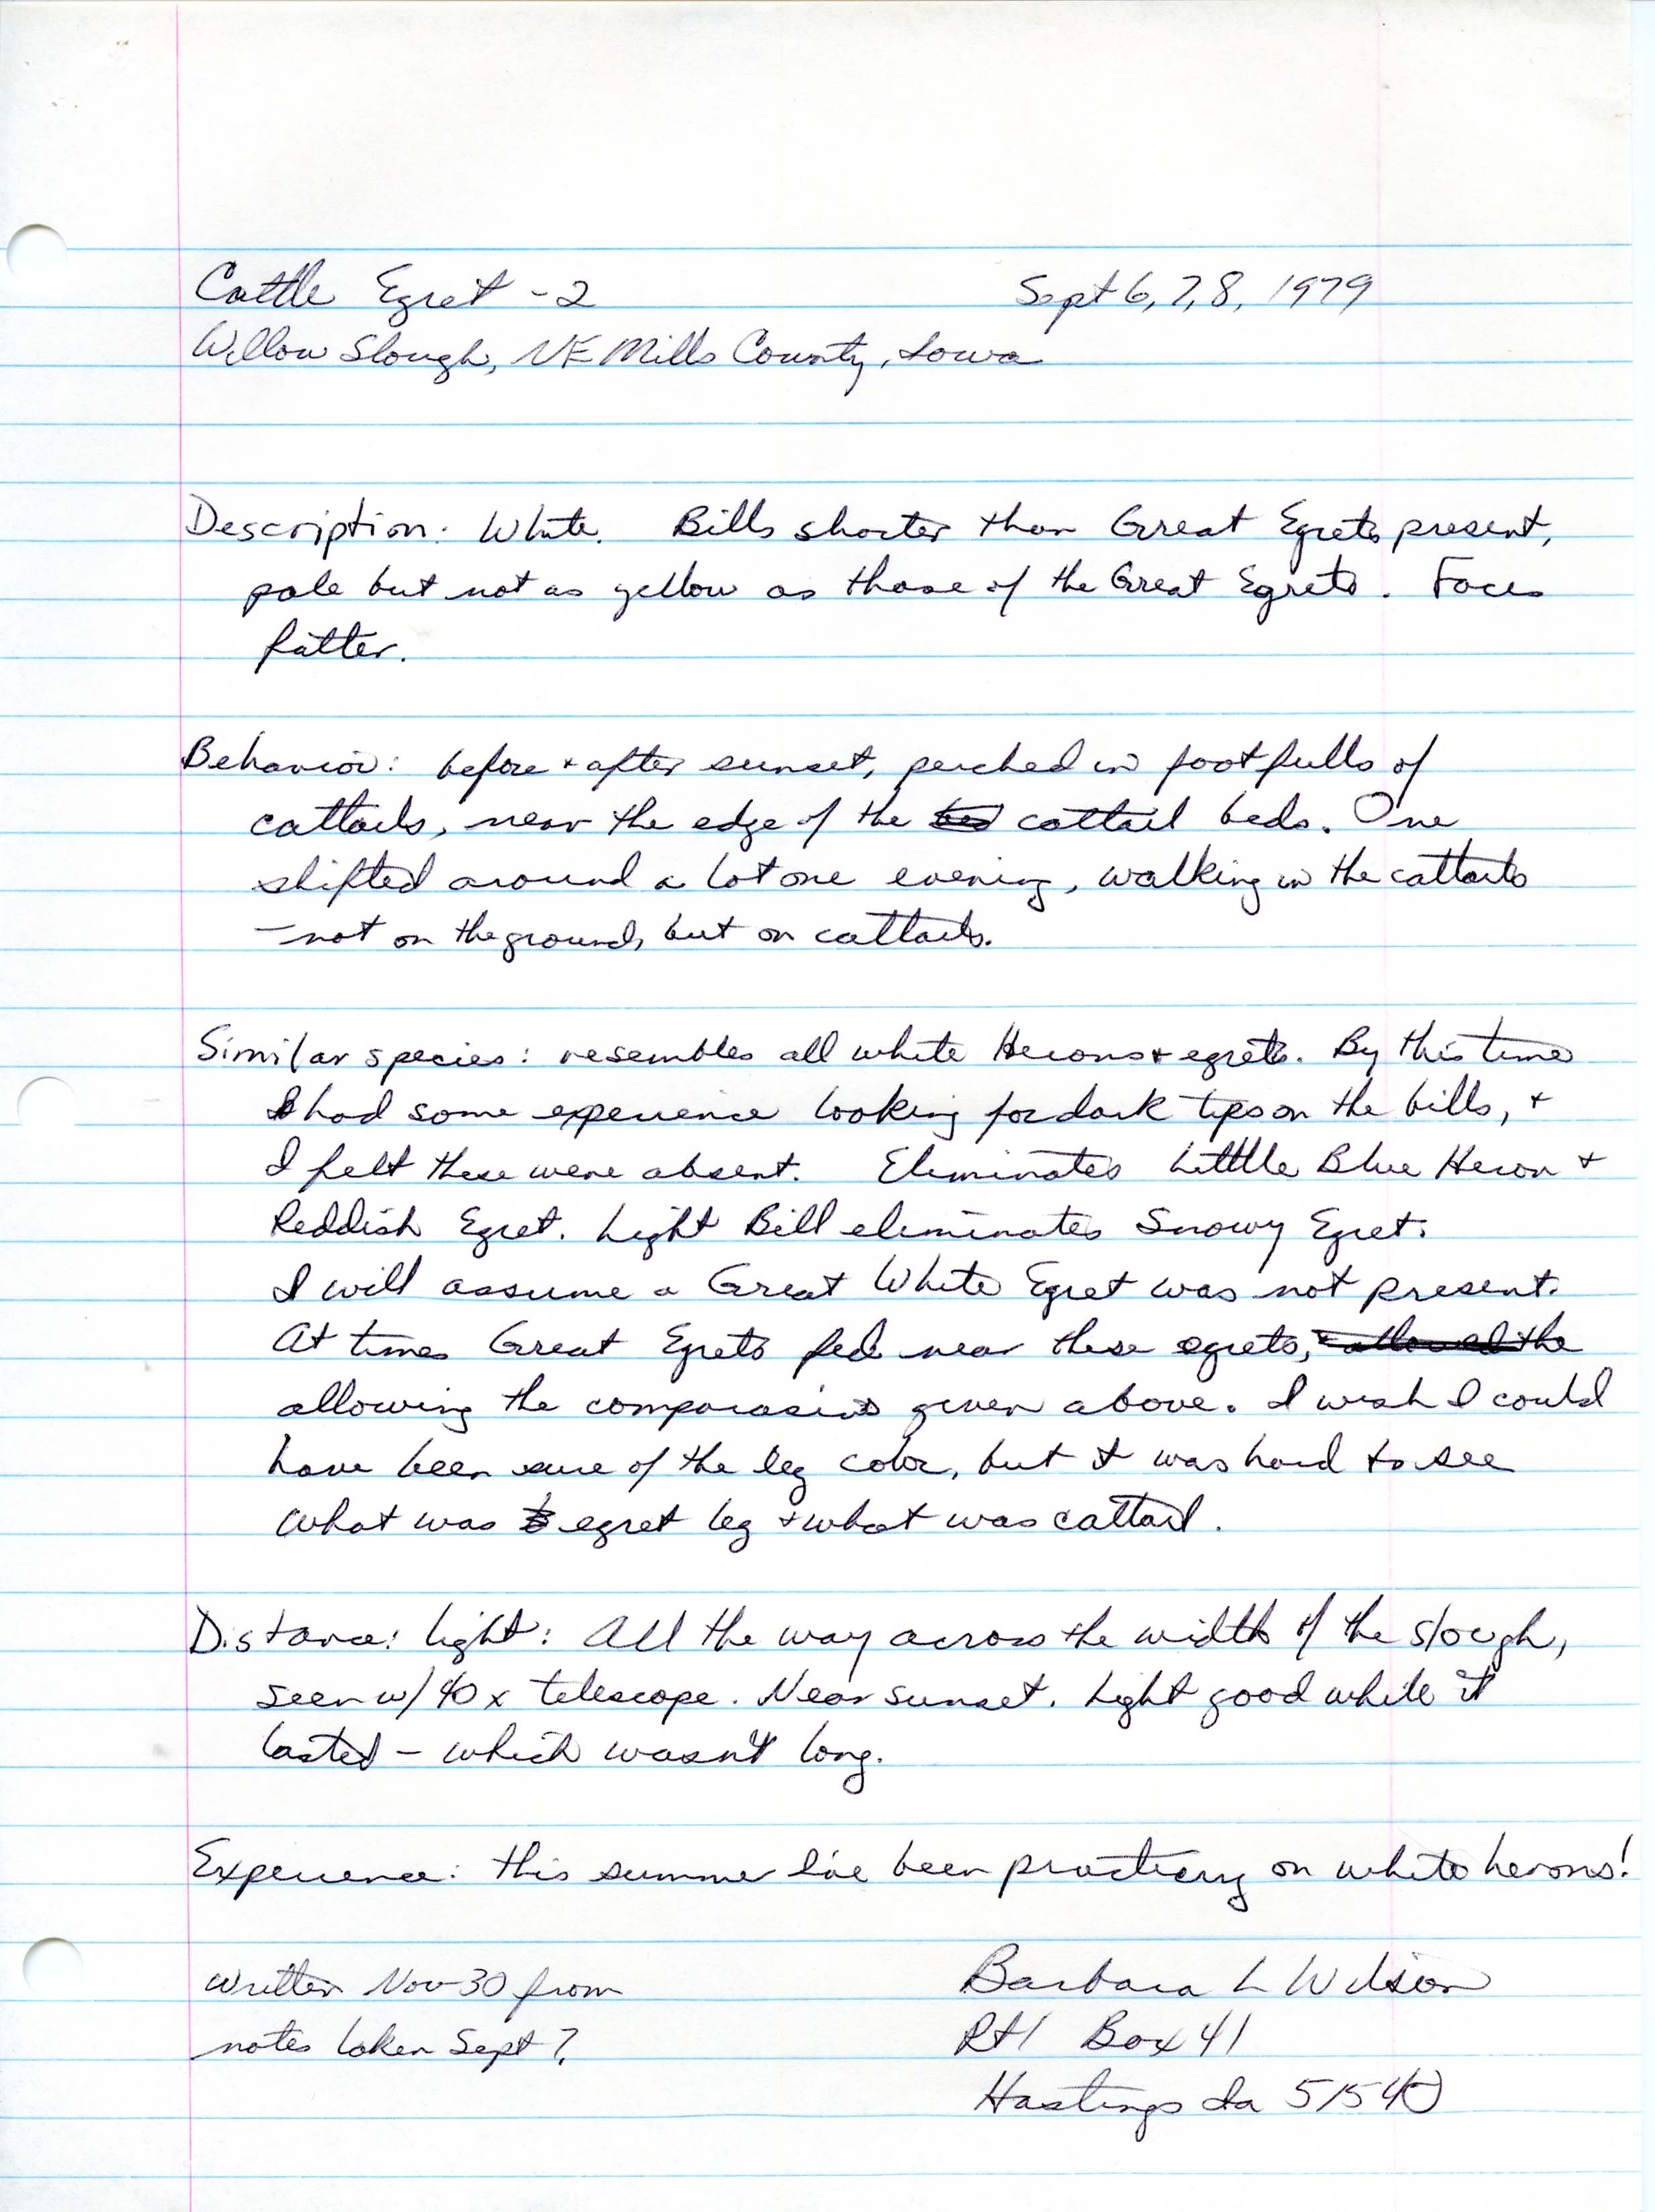 Rare bird documentation for Cattle Egret at Willow Slough, November 30, 1979